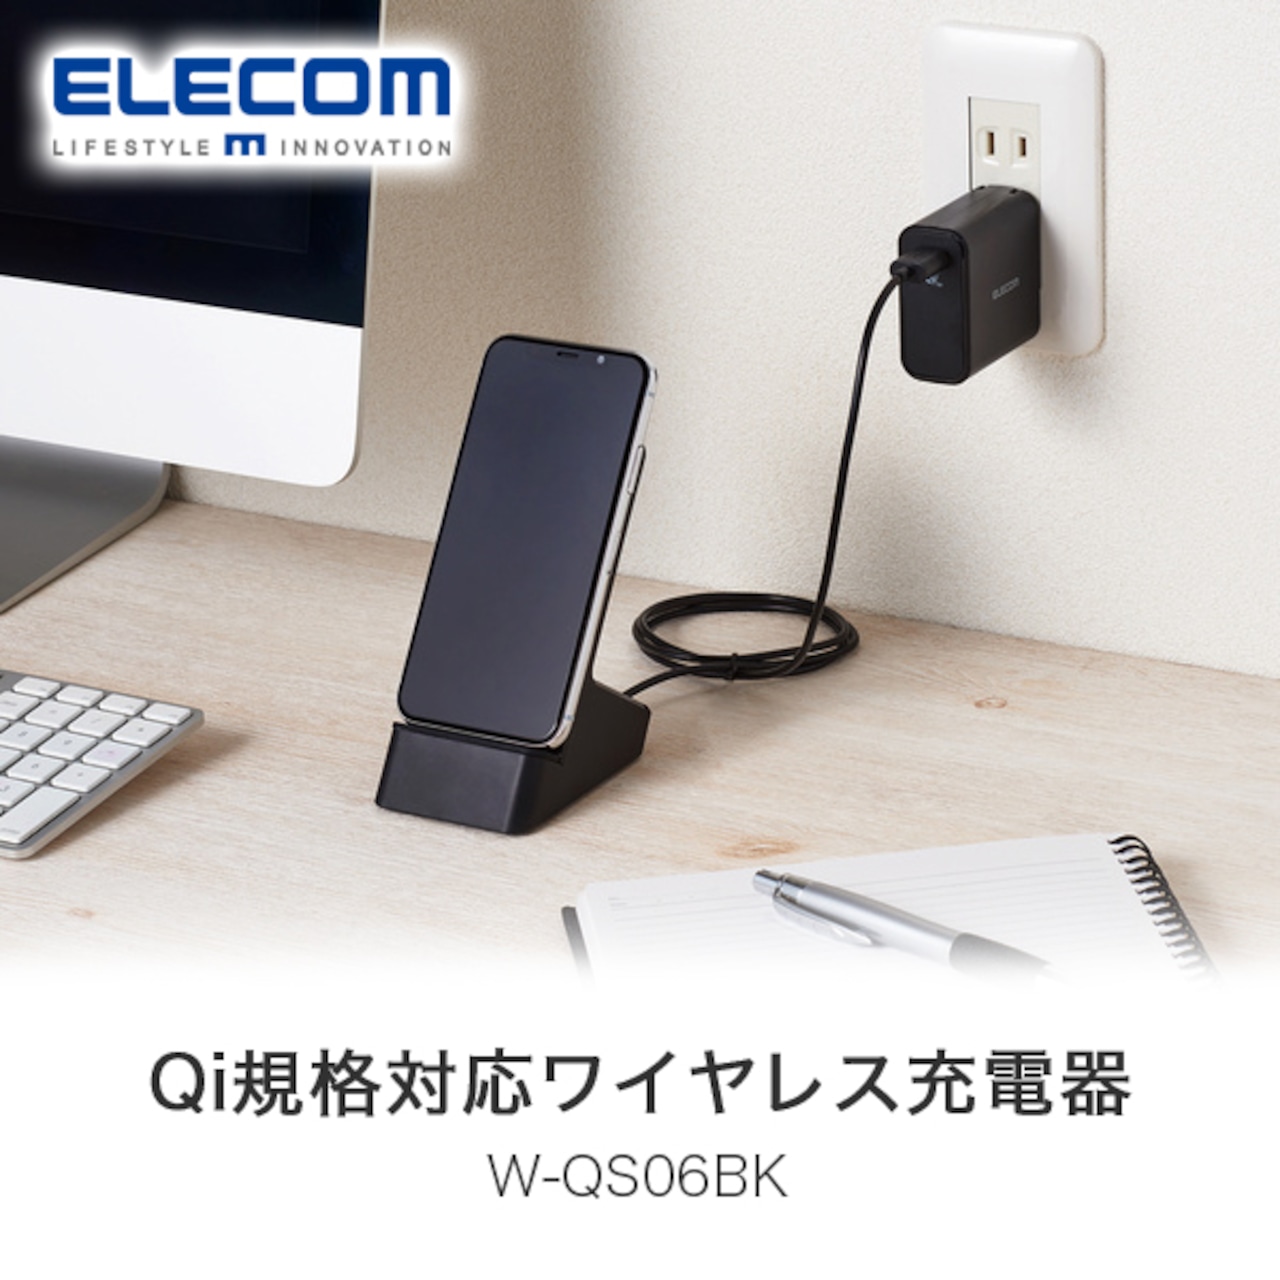 エレコム(ELECOM) Qi規格対応ワイヤレス充電器 W-QS06BK